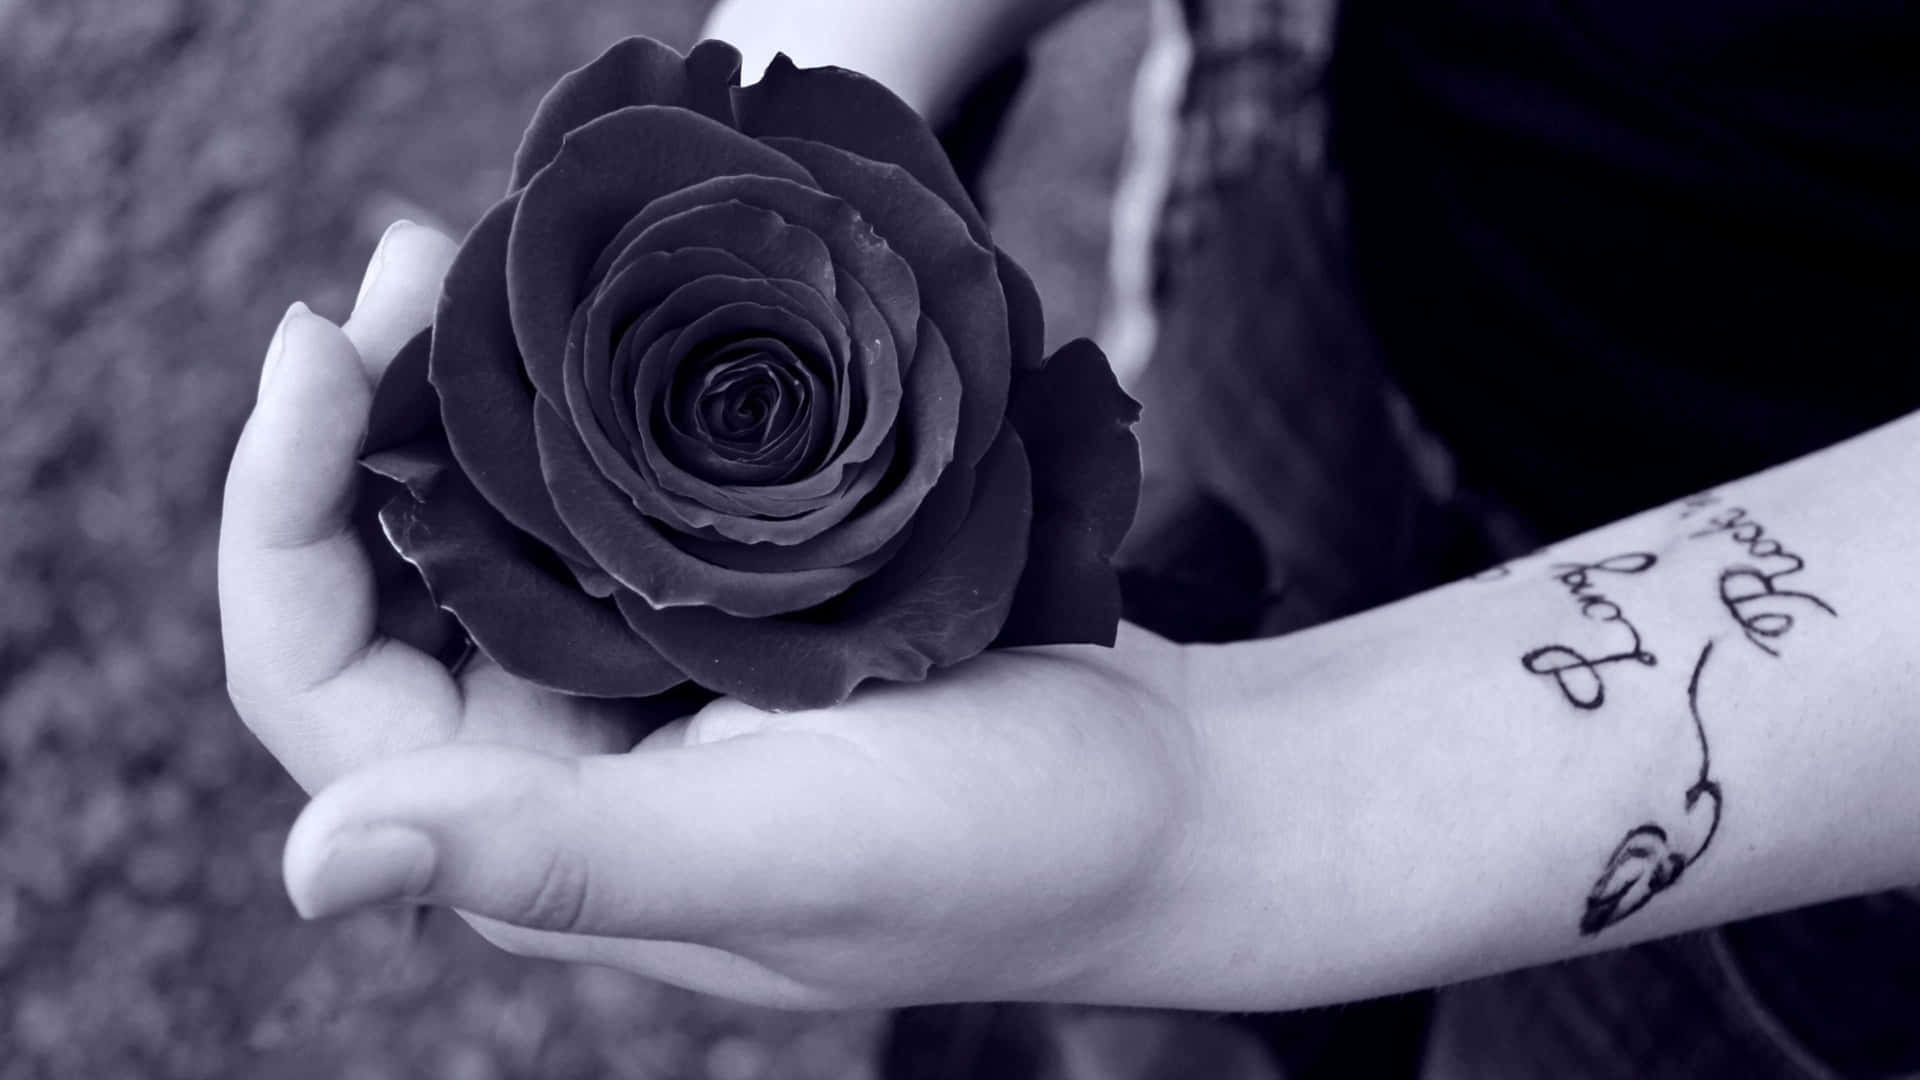 Diegeheimnisvolle Schönheit Einer Schwarzen Rose In Ihrer Ganzen Pracht.